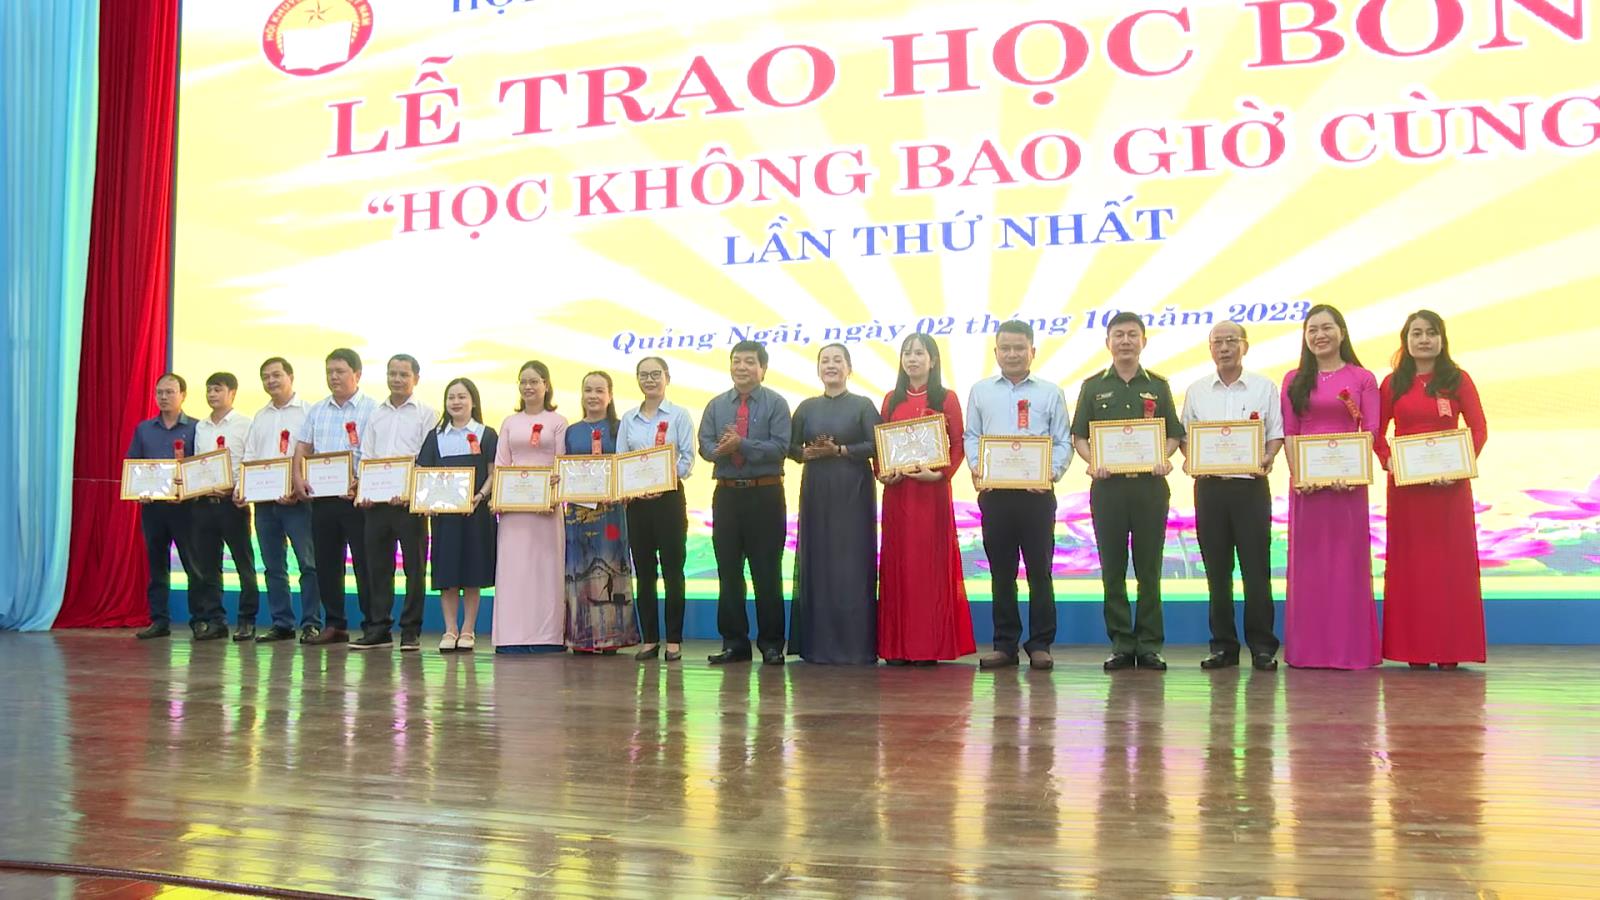 Huyện Sơn Tịnh có 4 cá nhân được nhận học bổng “Học không bao giờ cùng” của Hội Khuyến học tỉnh Quảng Ngãi